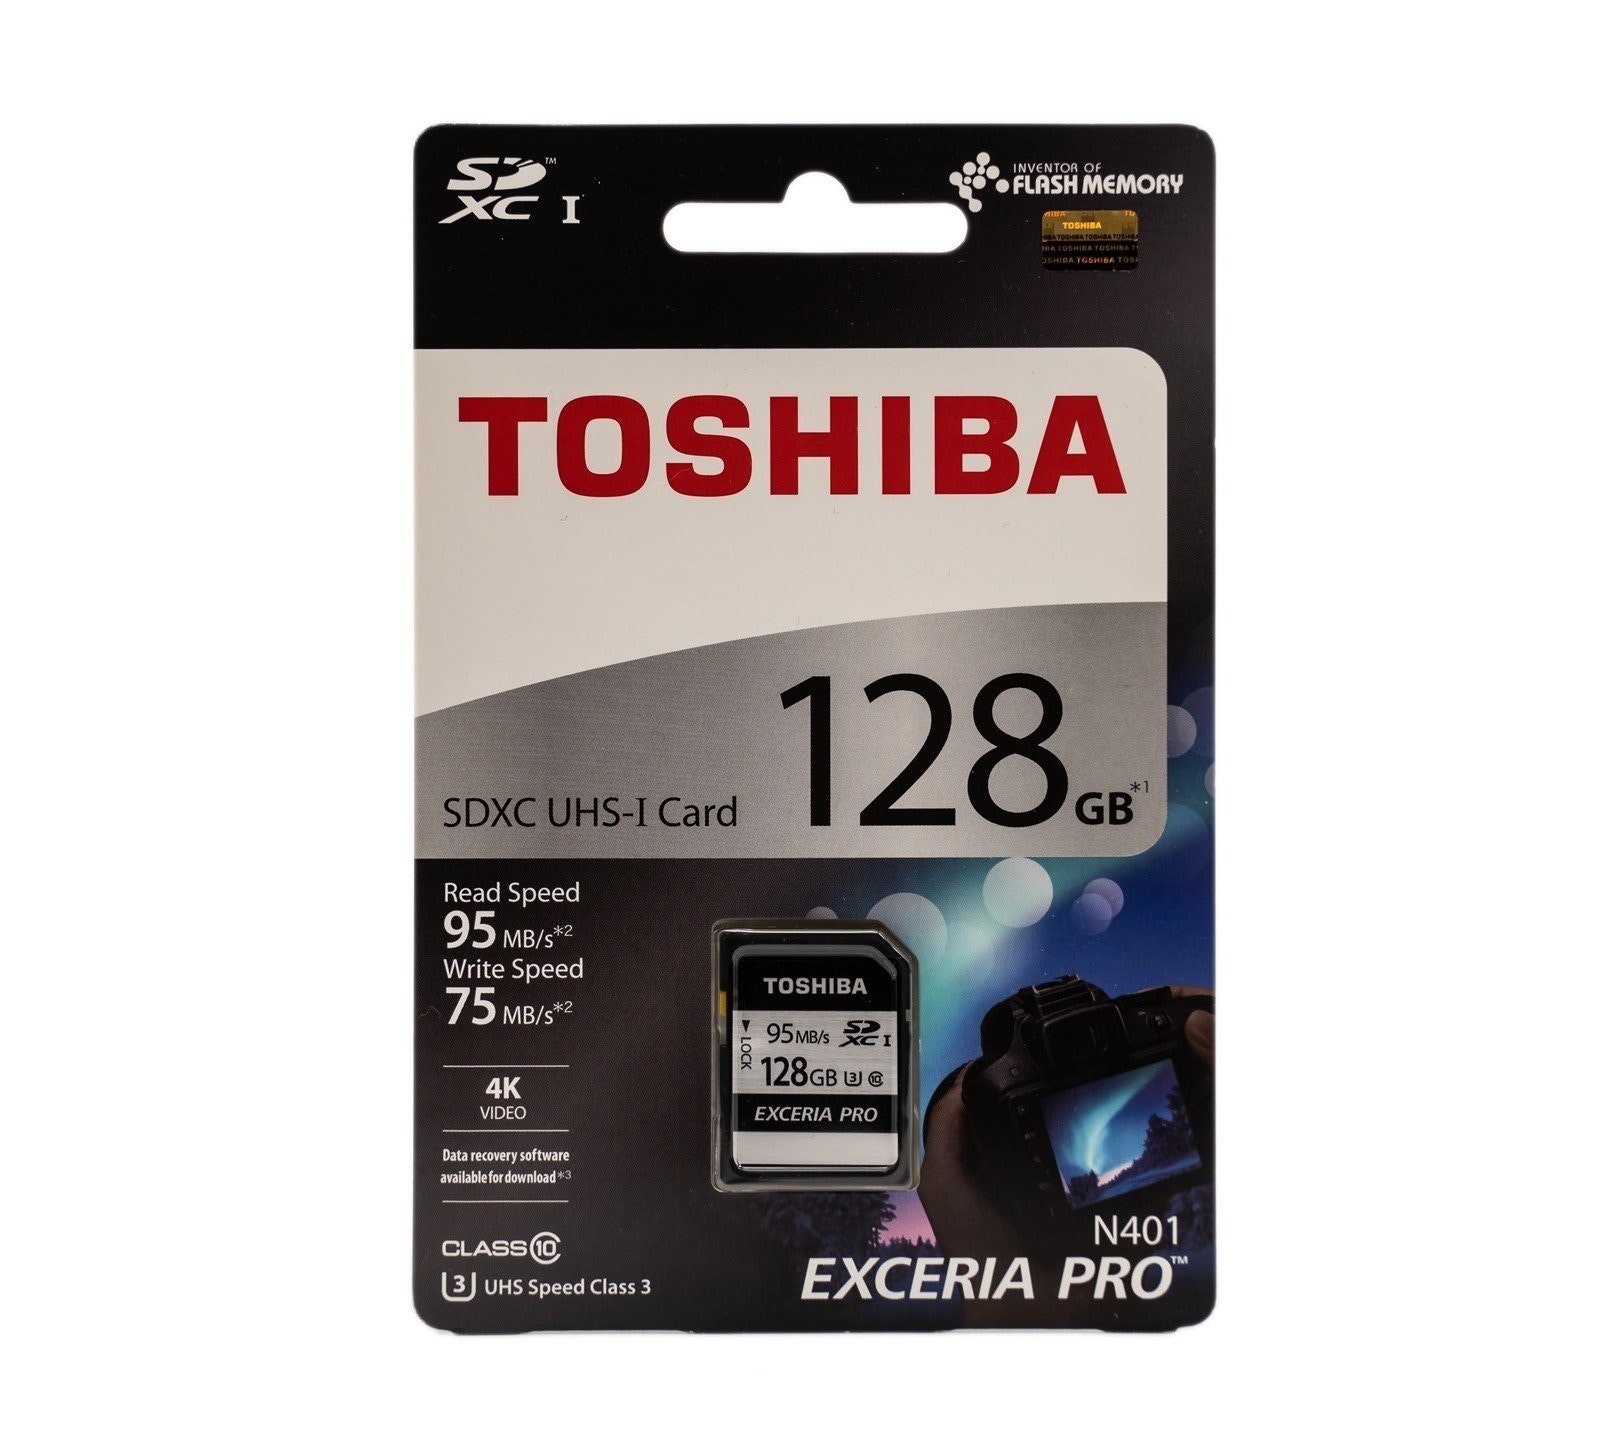 是高速影音時代！找張高速讀取高速寫入記憶卡！『TOSHIBA EXCERIA PRO 128GB UHS-I U3 SDXC 勁速炫銀記憶卡』實測分享這篇文章的首圖